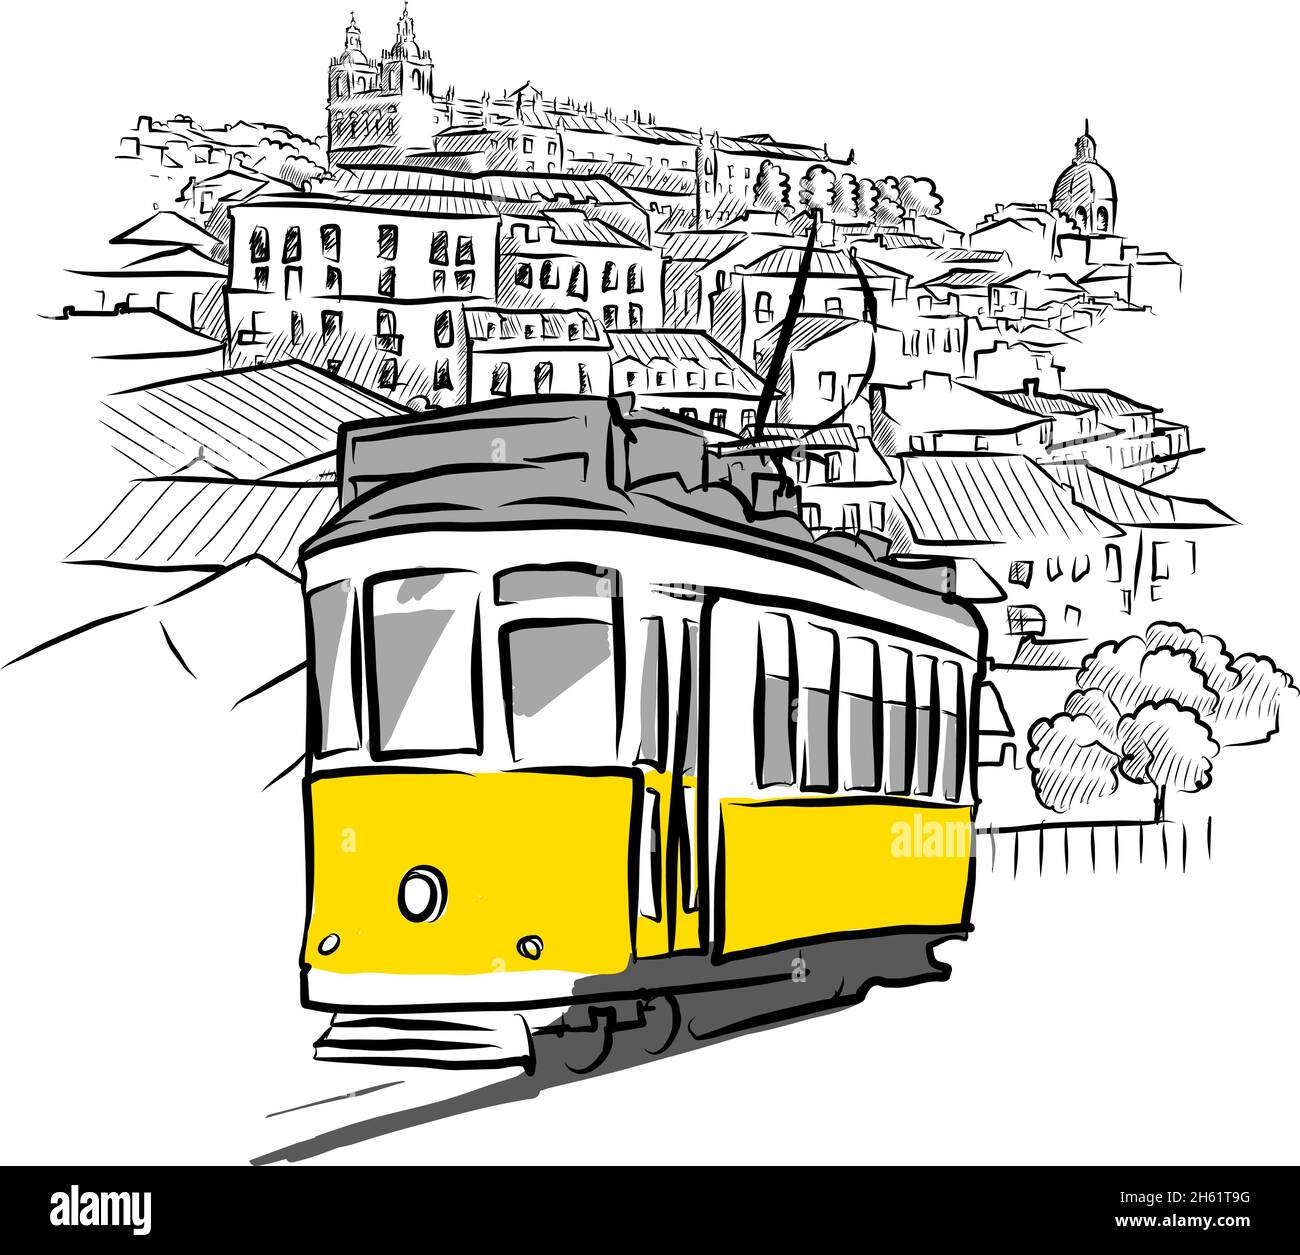 Straßenbahn und altes Panorama. Handgezeichnete Vektorskizzen aus Lissabon, Portugal. Stock Vektor